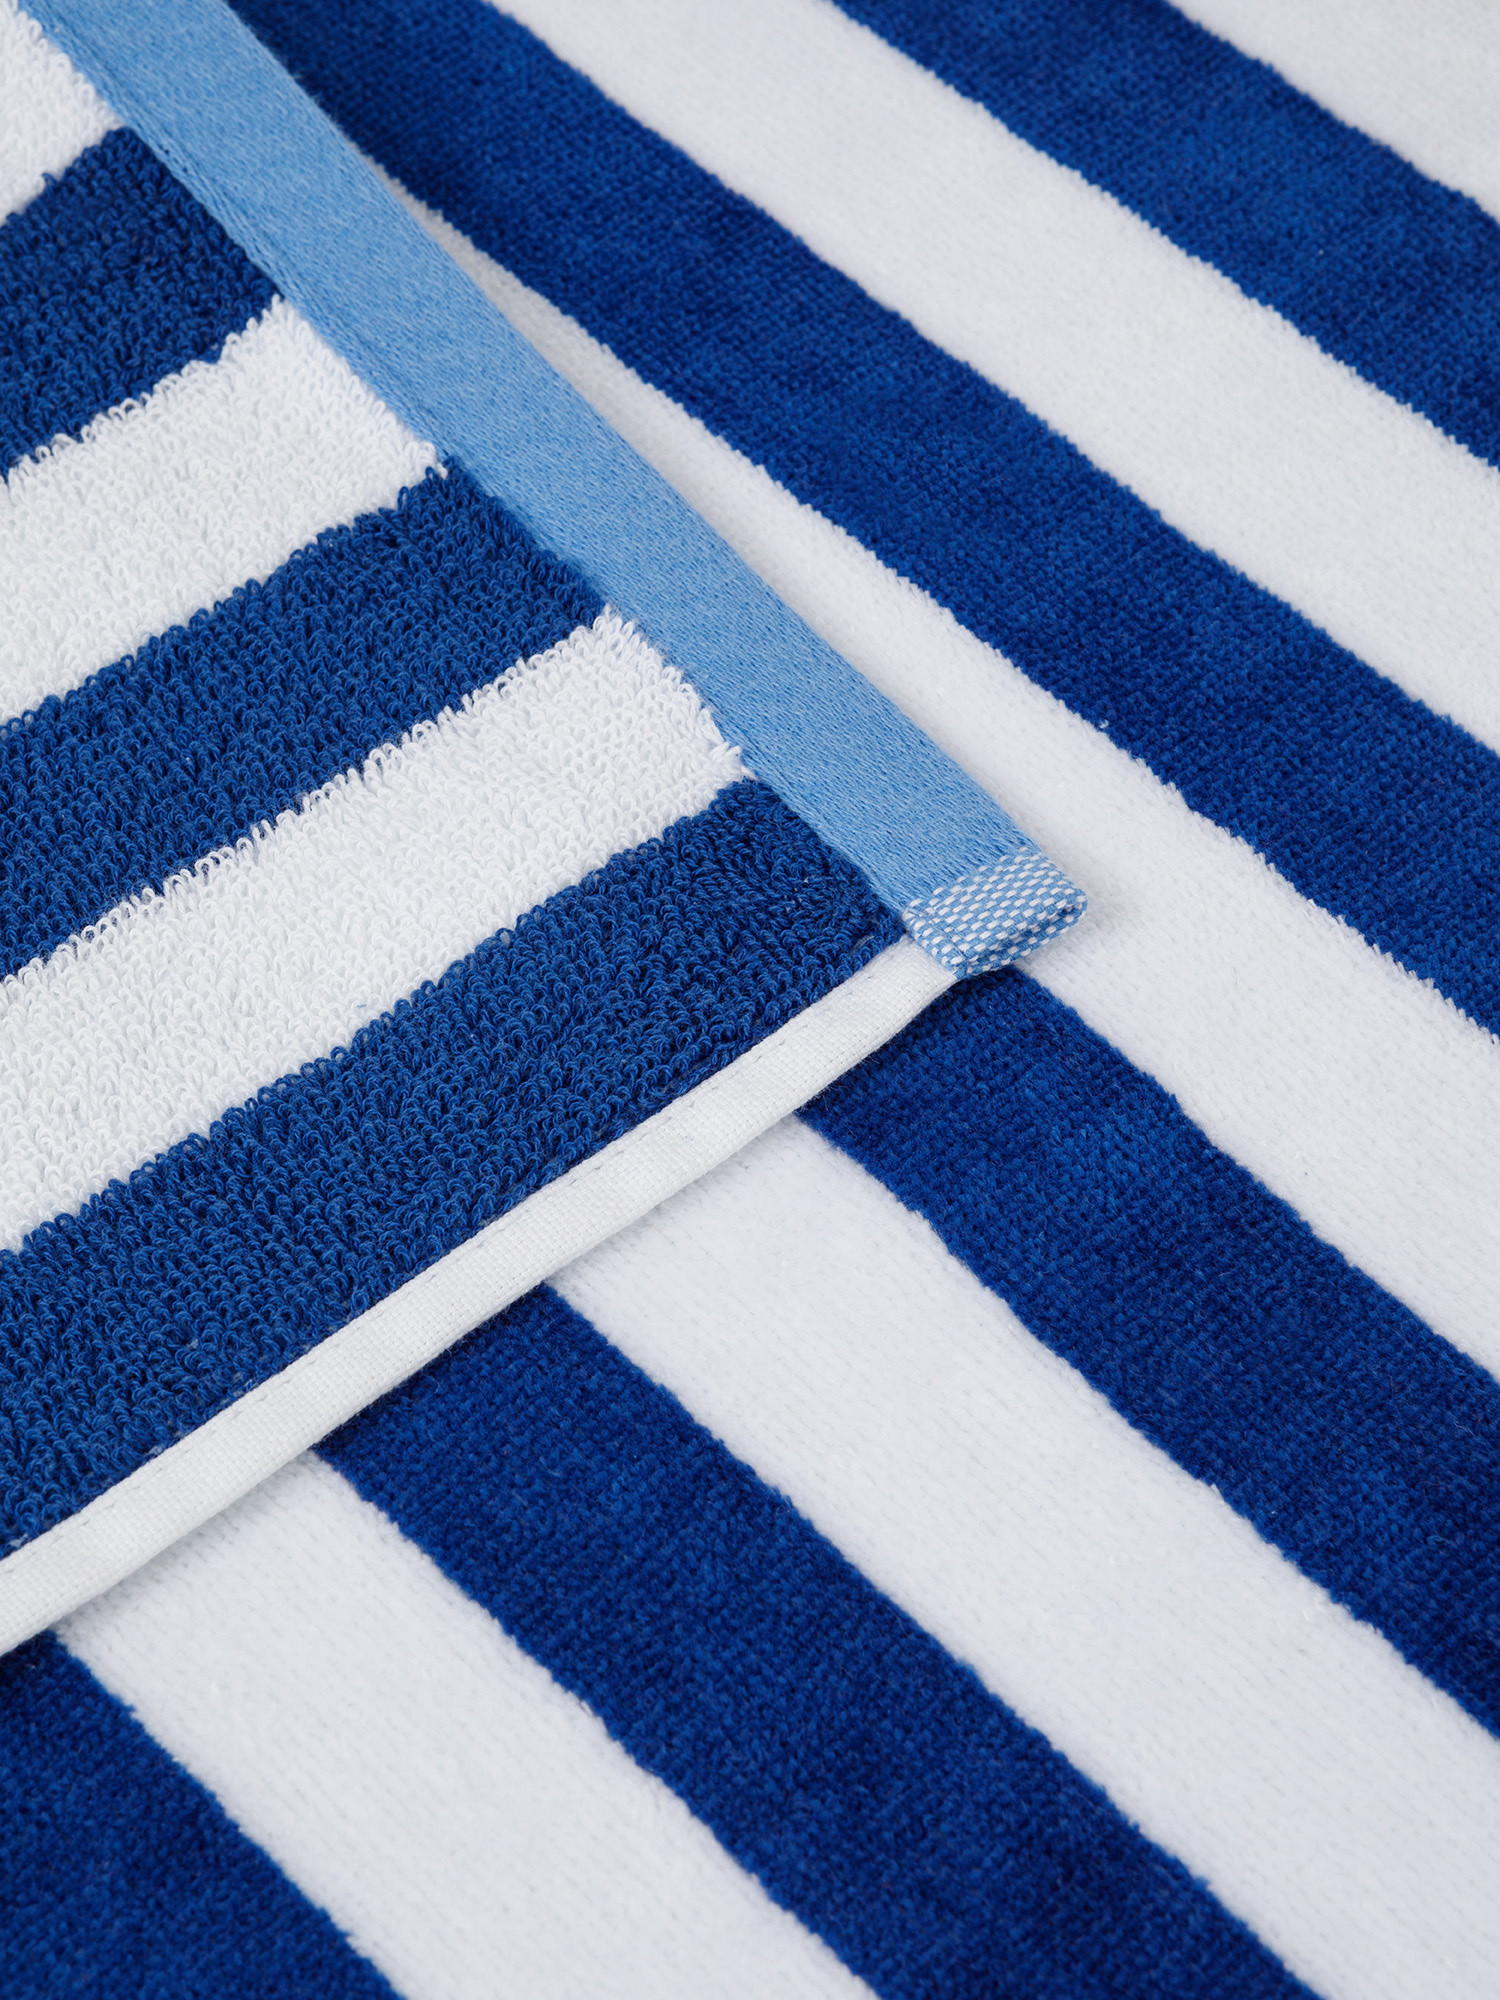 Velor cotton towel with sailor stripes motif, Blue, large image number 2